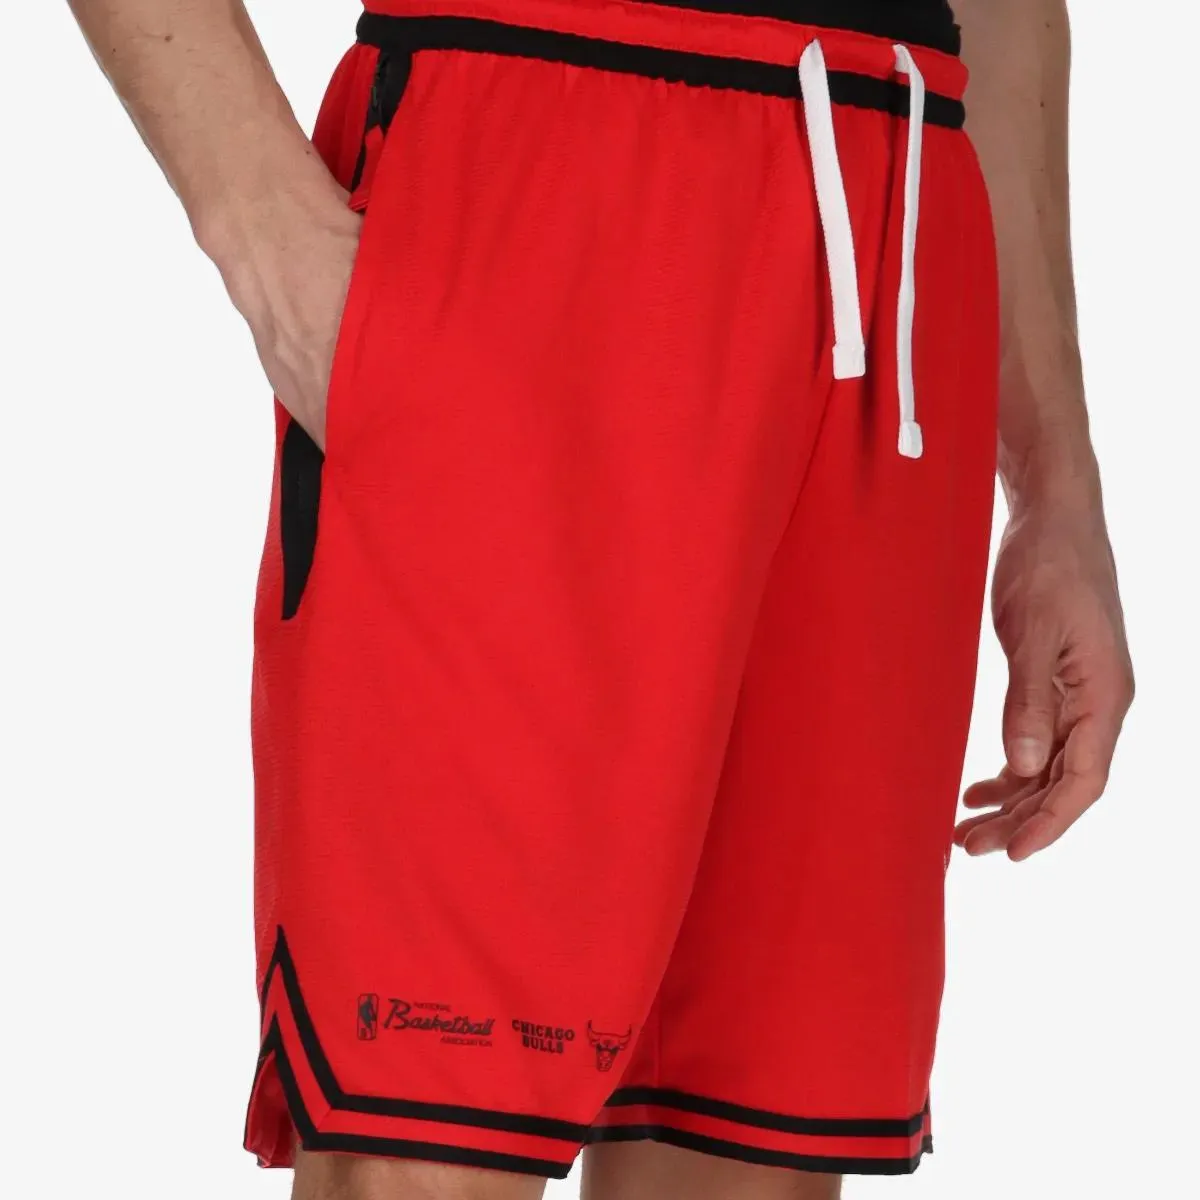 Nike Chicago Bulls 